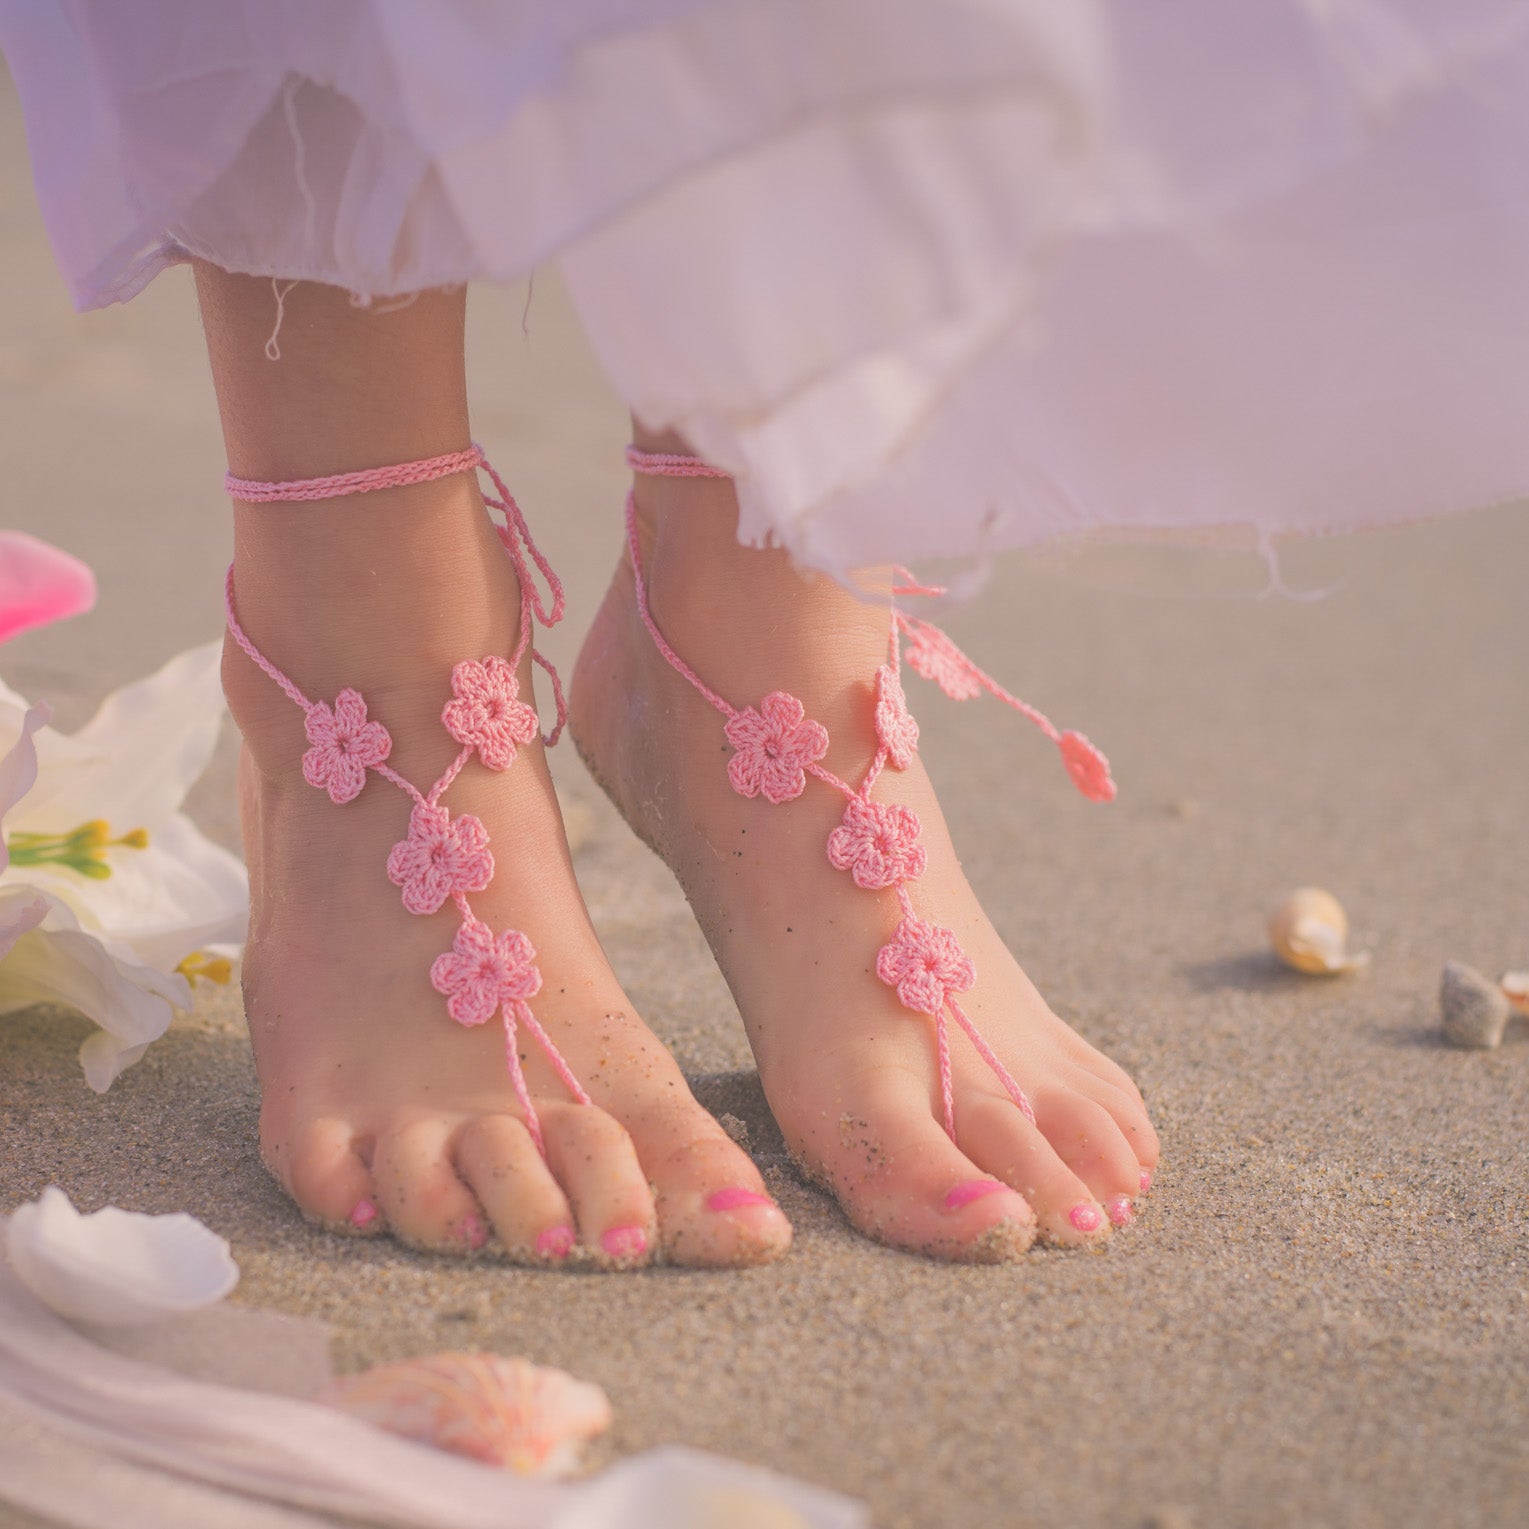 Foot девочек. Берифут КИД девочка. Feet девочки. Barefeet для девочки. Девочки розовая feet.